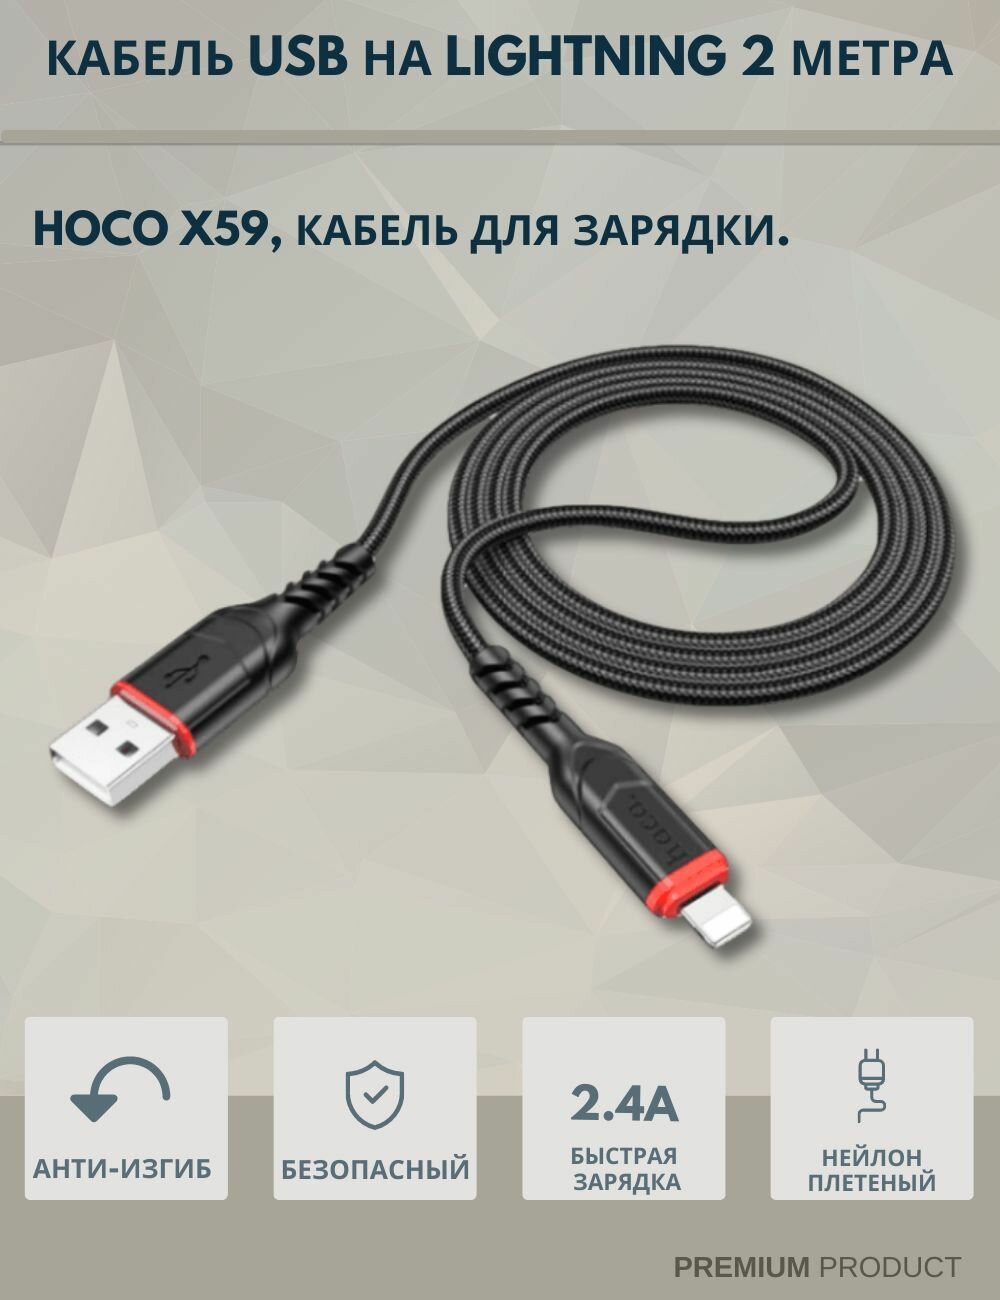 Кабель Type-C - USB для быстрой зарядки hoco X59 красный 2 метра красный / Провод type-c хоко кабель для зарядки type c / Шнур зарядка usb кабель